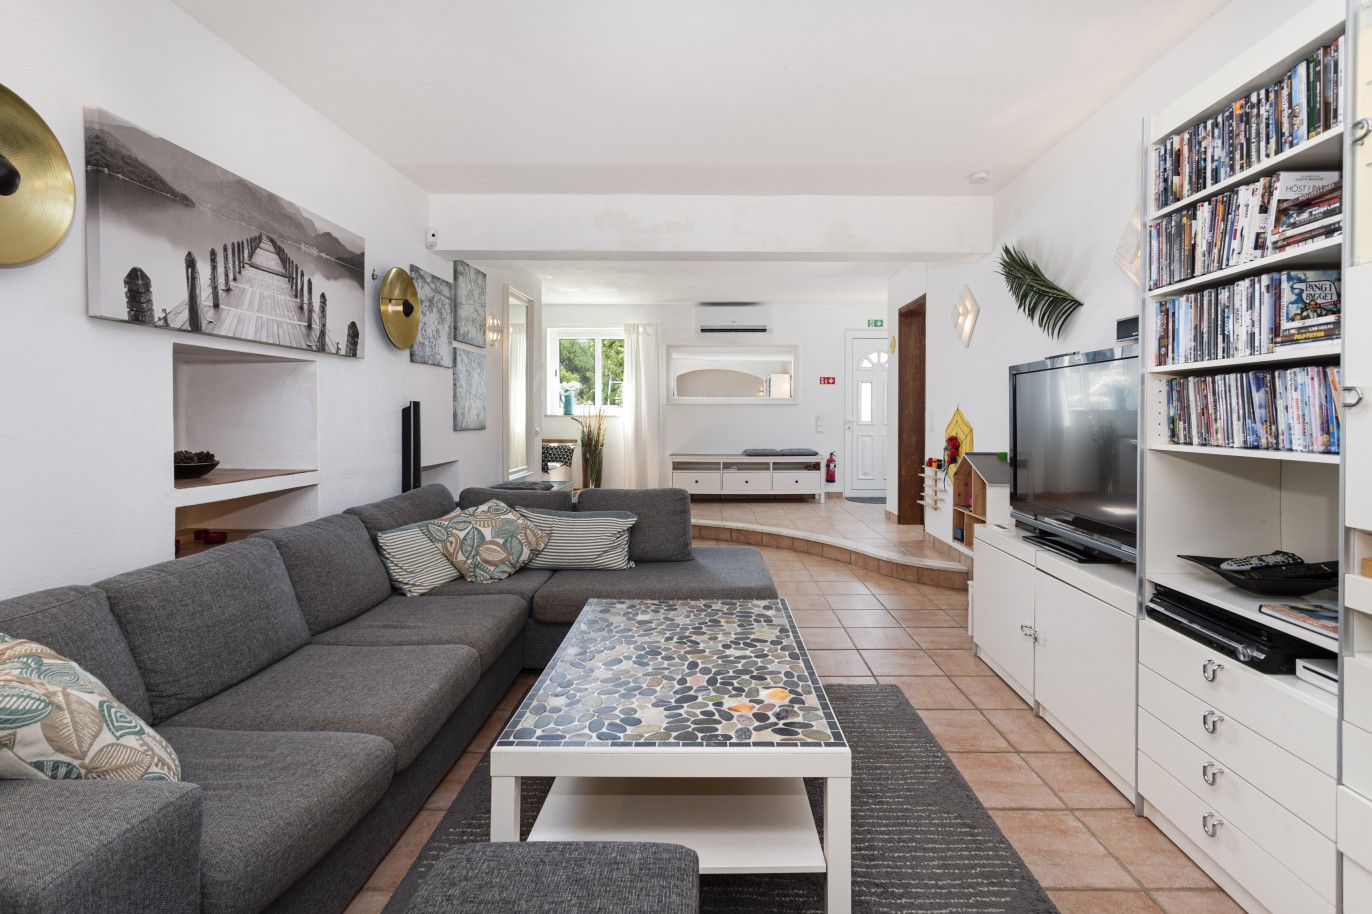 5 bedroom villa with pool and sea view, for sale in Estoi, Algarve_230478